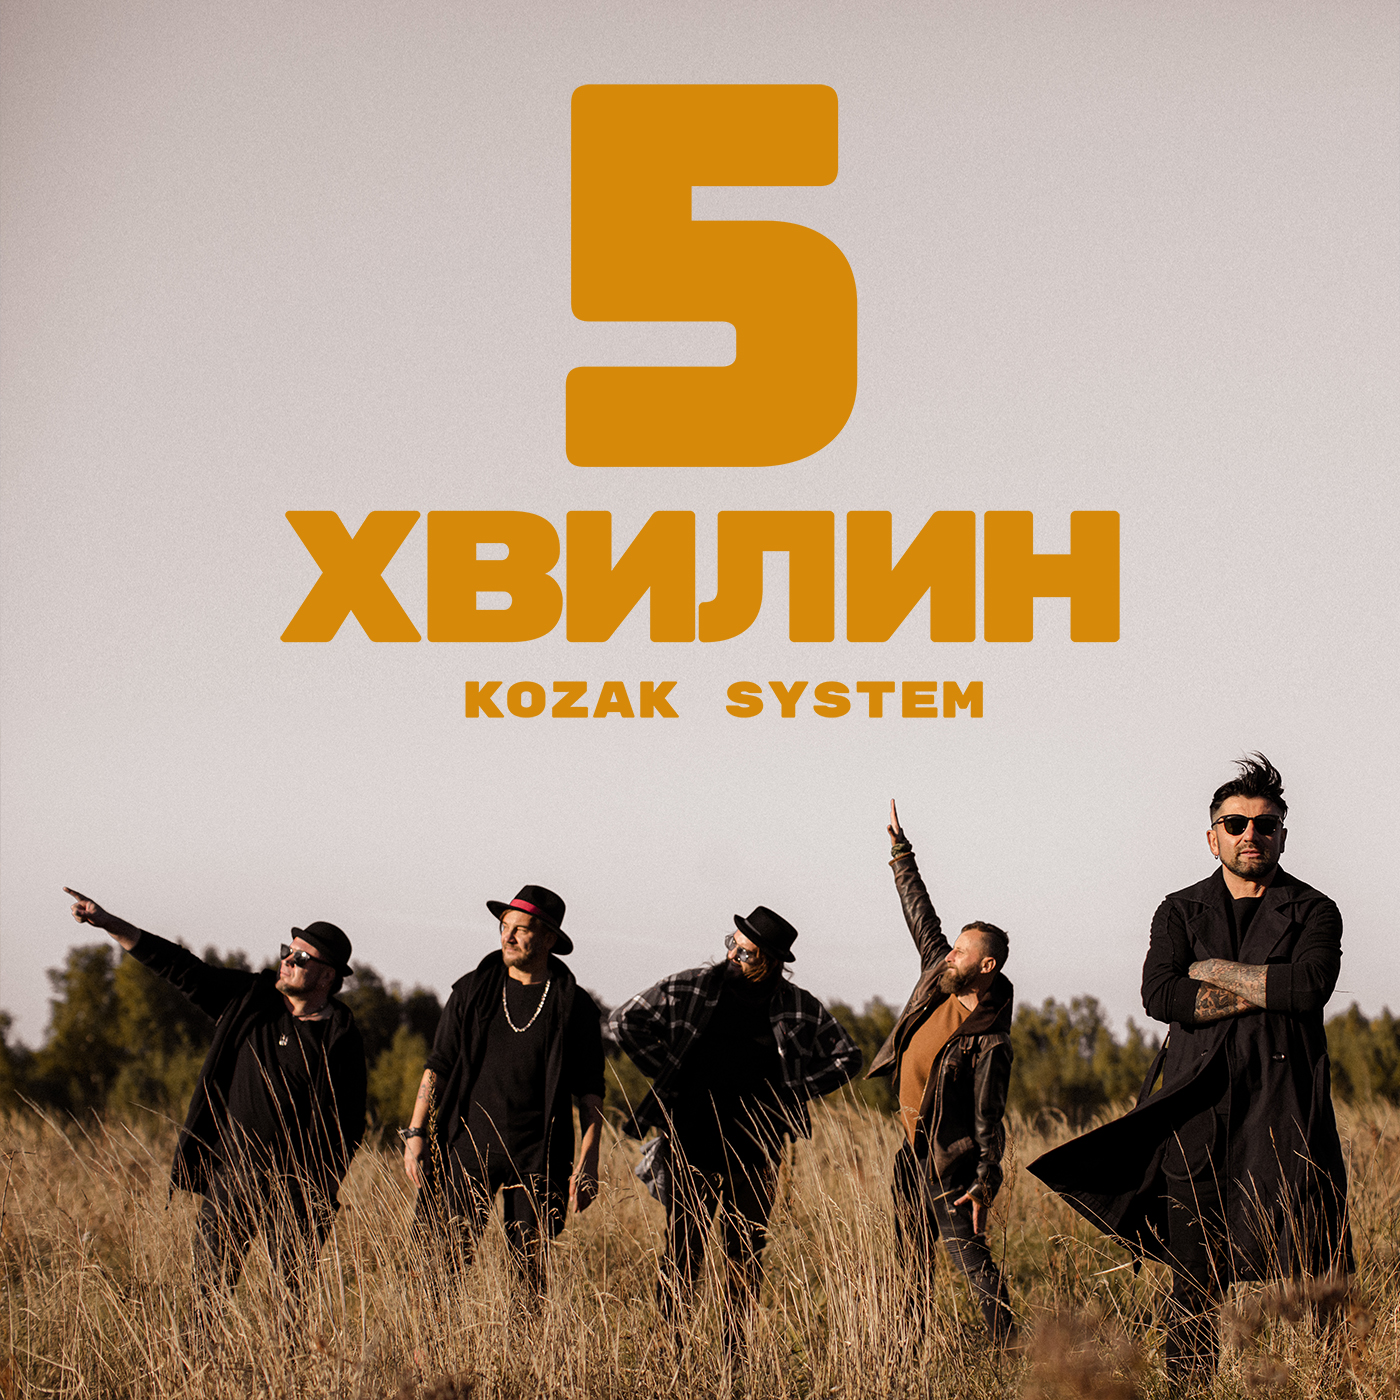 kozak system